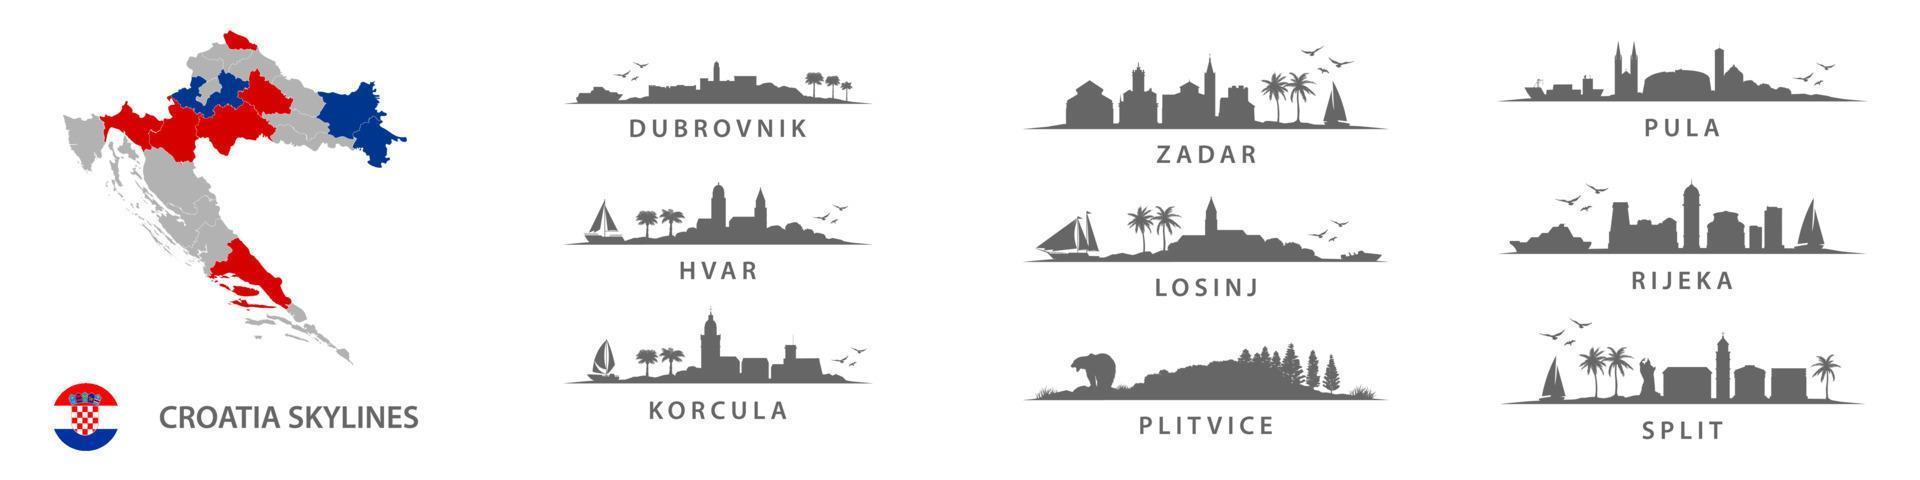 colección de horizontes croatas, grandes ciudades en croacia, europa del este. dubrovnik, zadar, pula, hvar, losinj, rijeka, korcula, plitvice, split. vector